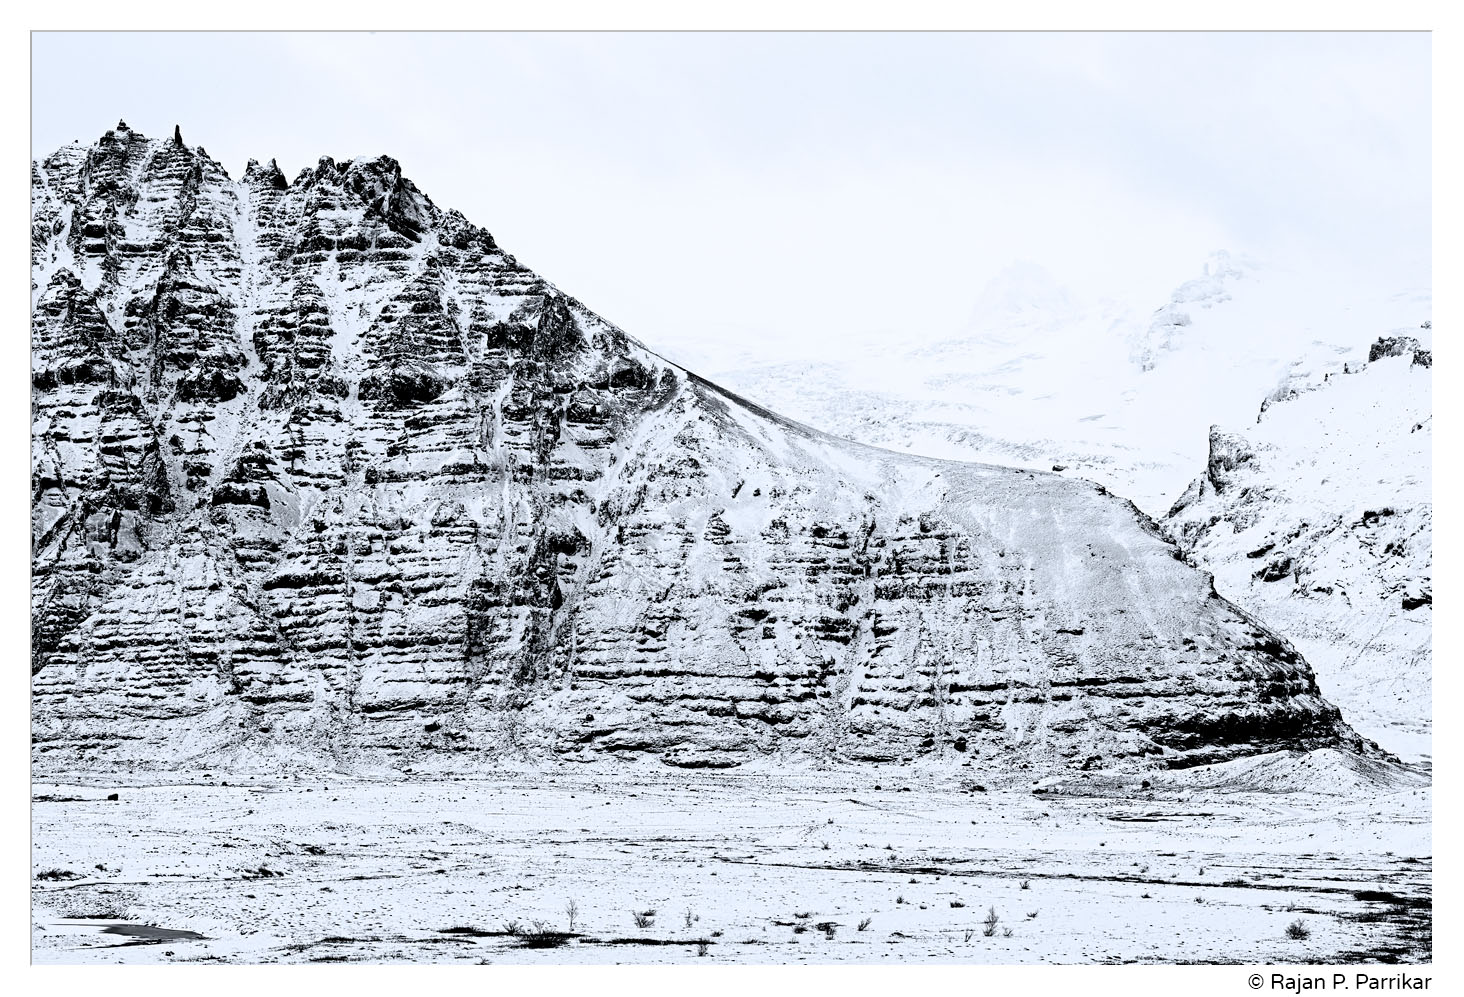 Hafrafell near Svínafellsjökull glacier, Iceland